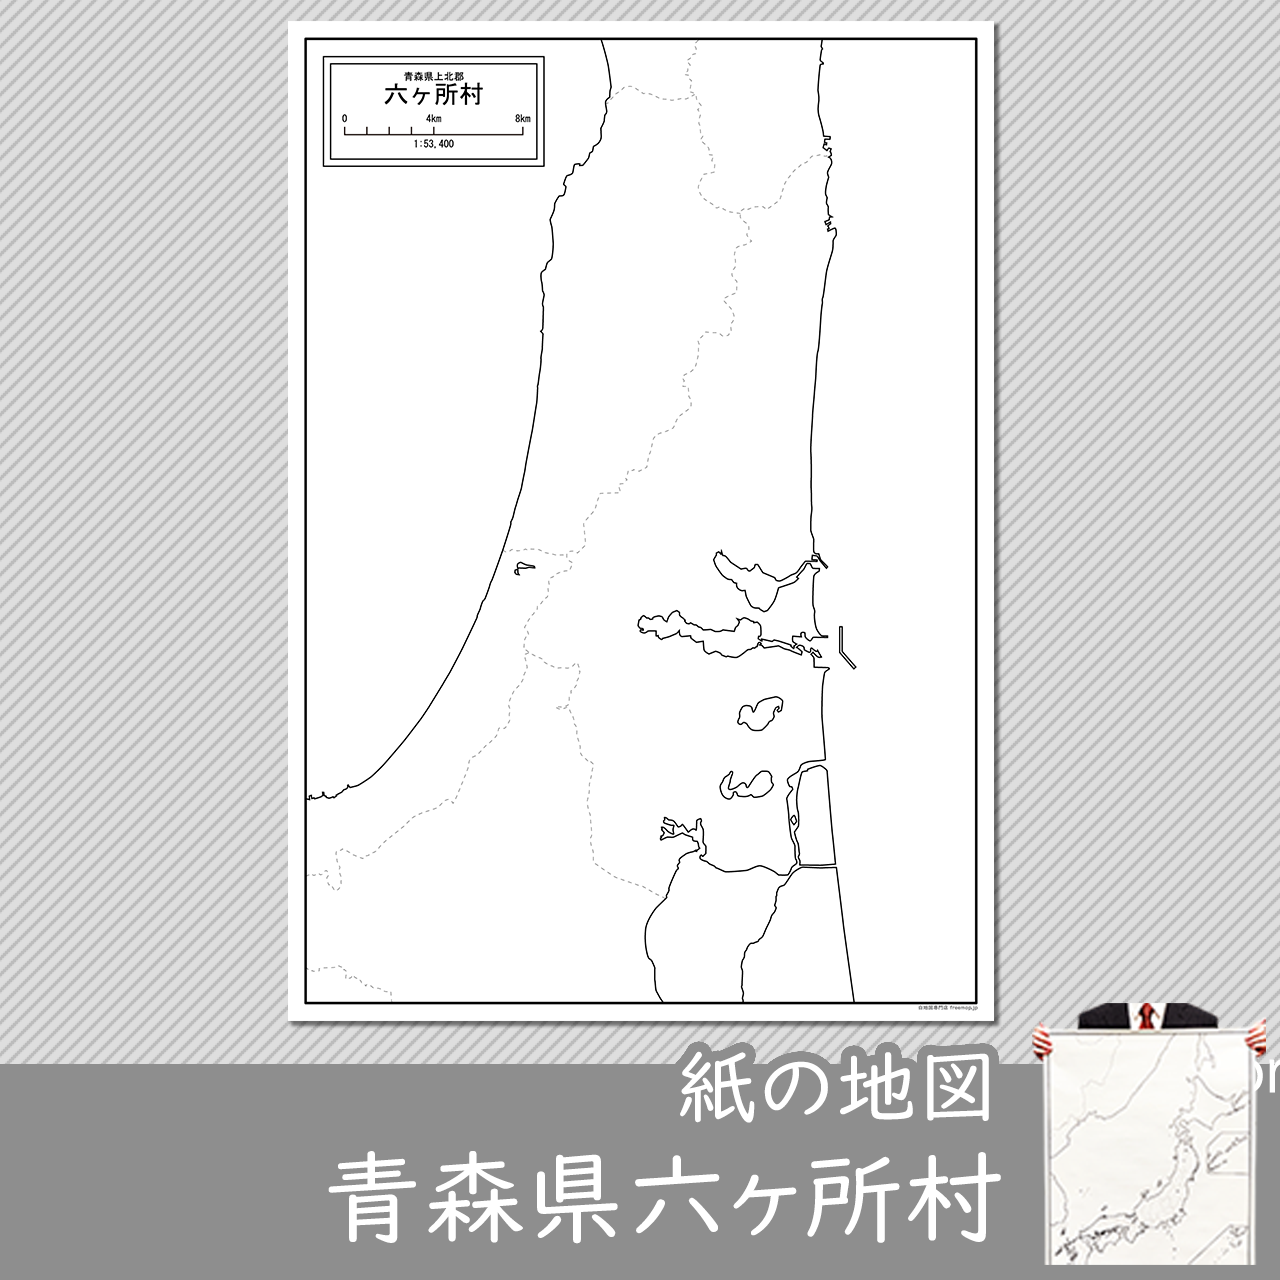 六ヶ所村の紙の白地図のサムネイル